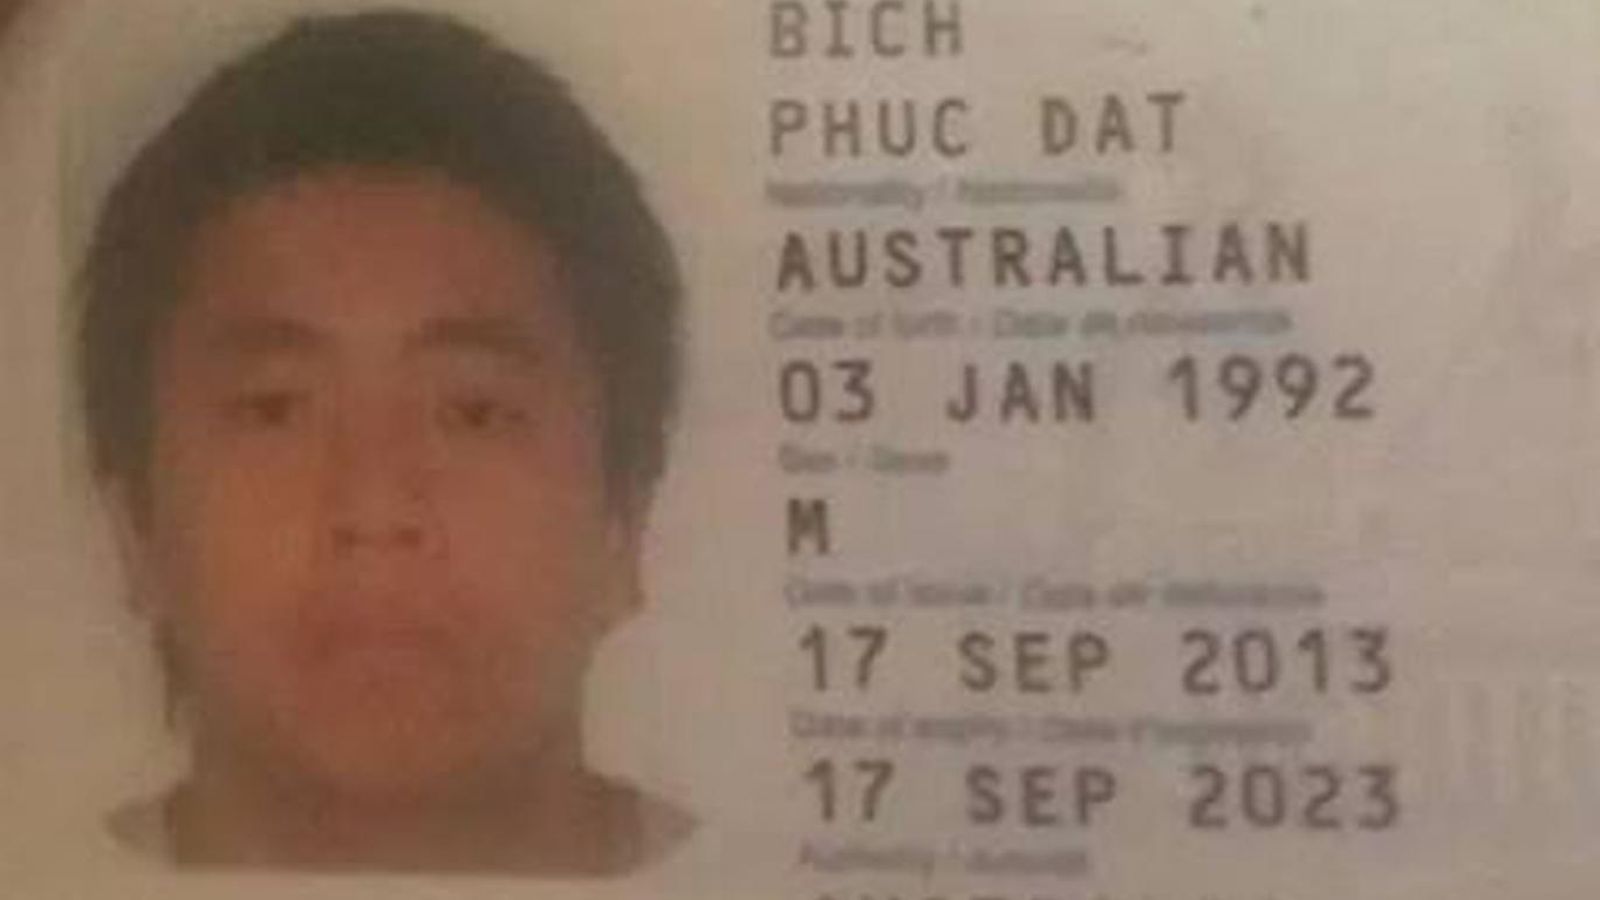 Foto: Pasaporte falseado por el supuesto Phuc Dat Bich